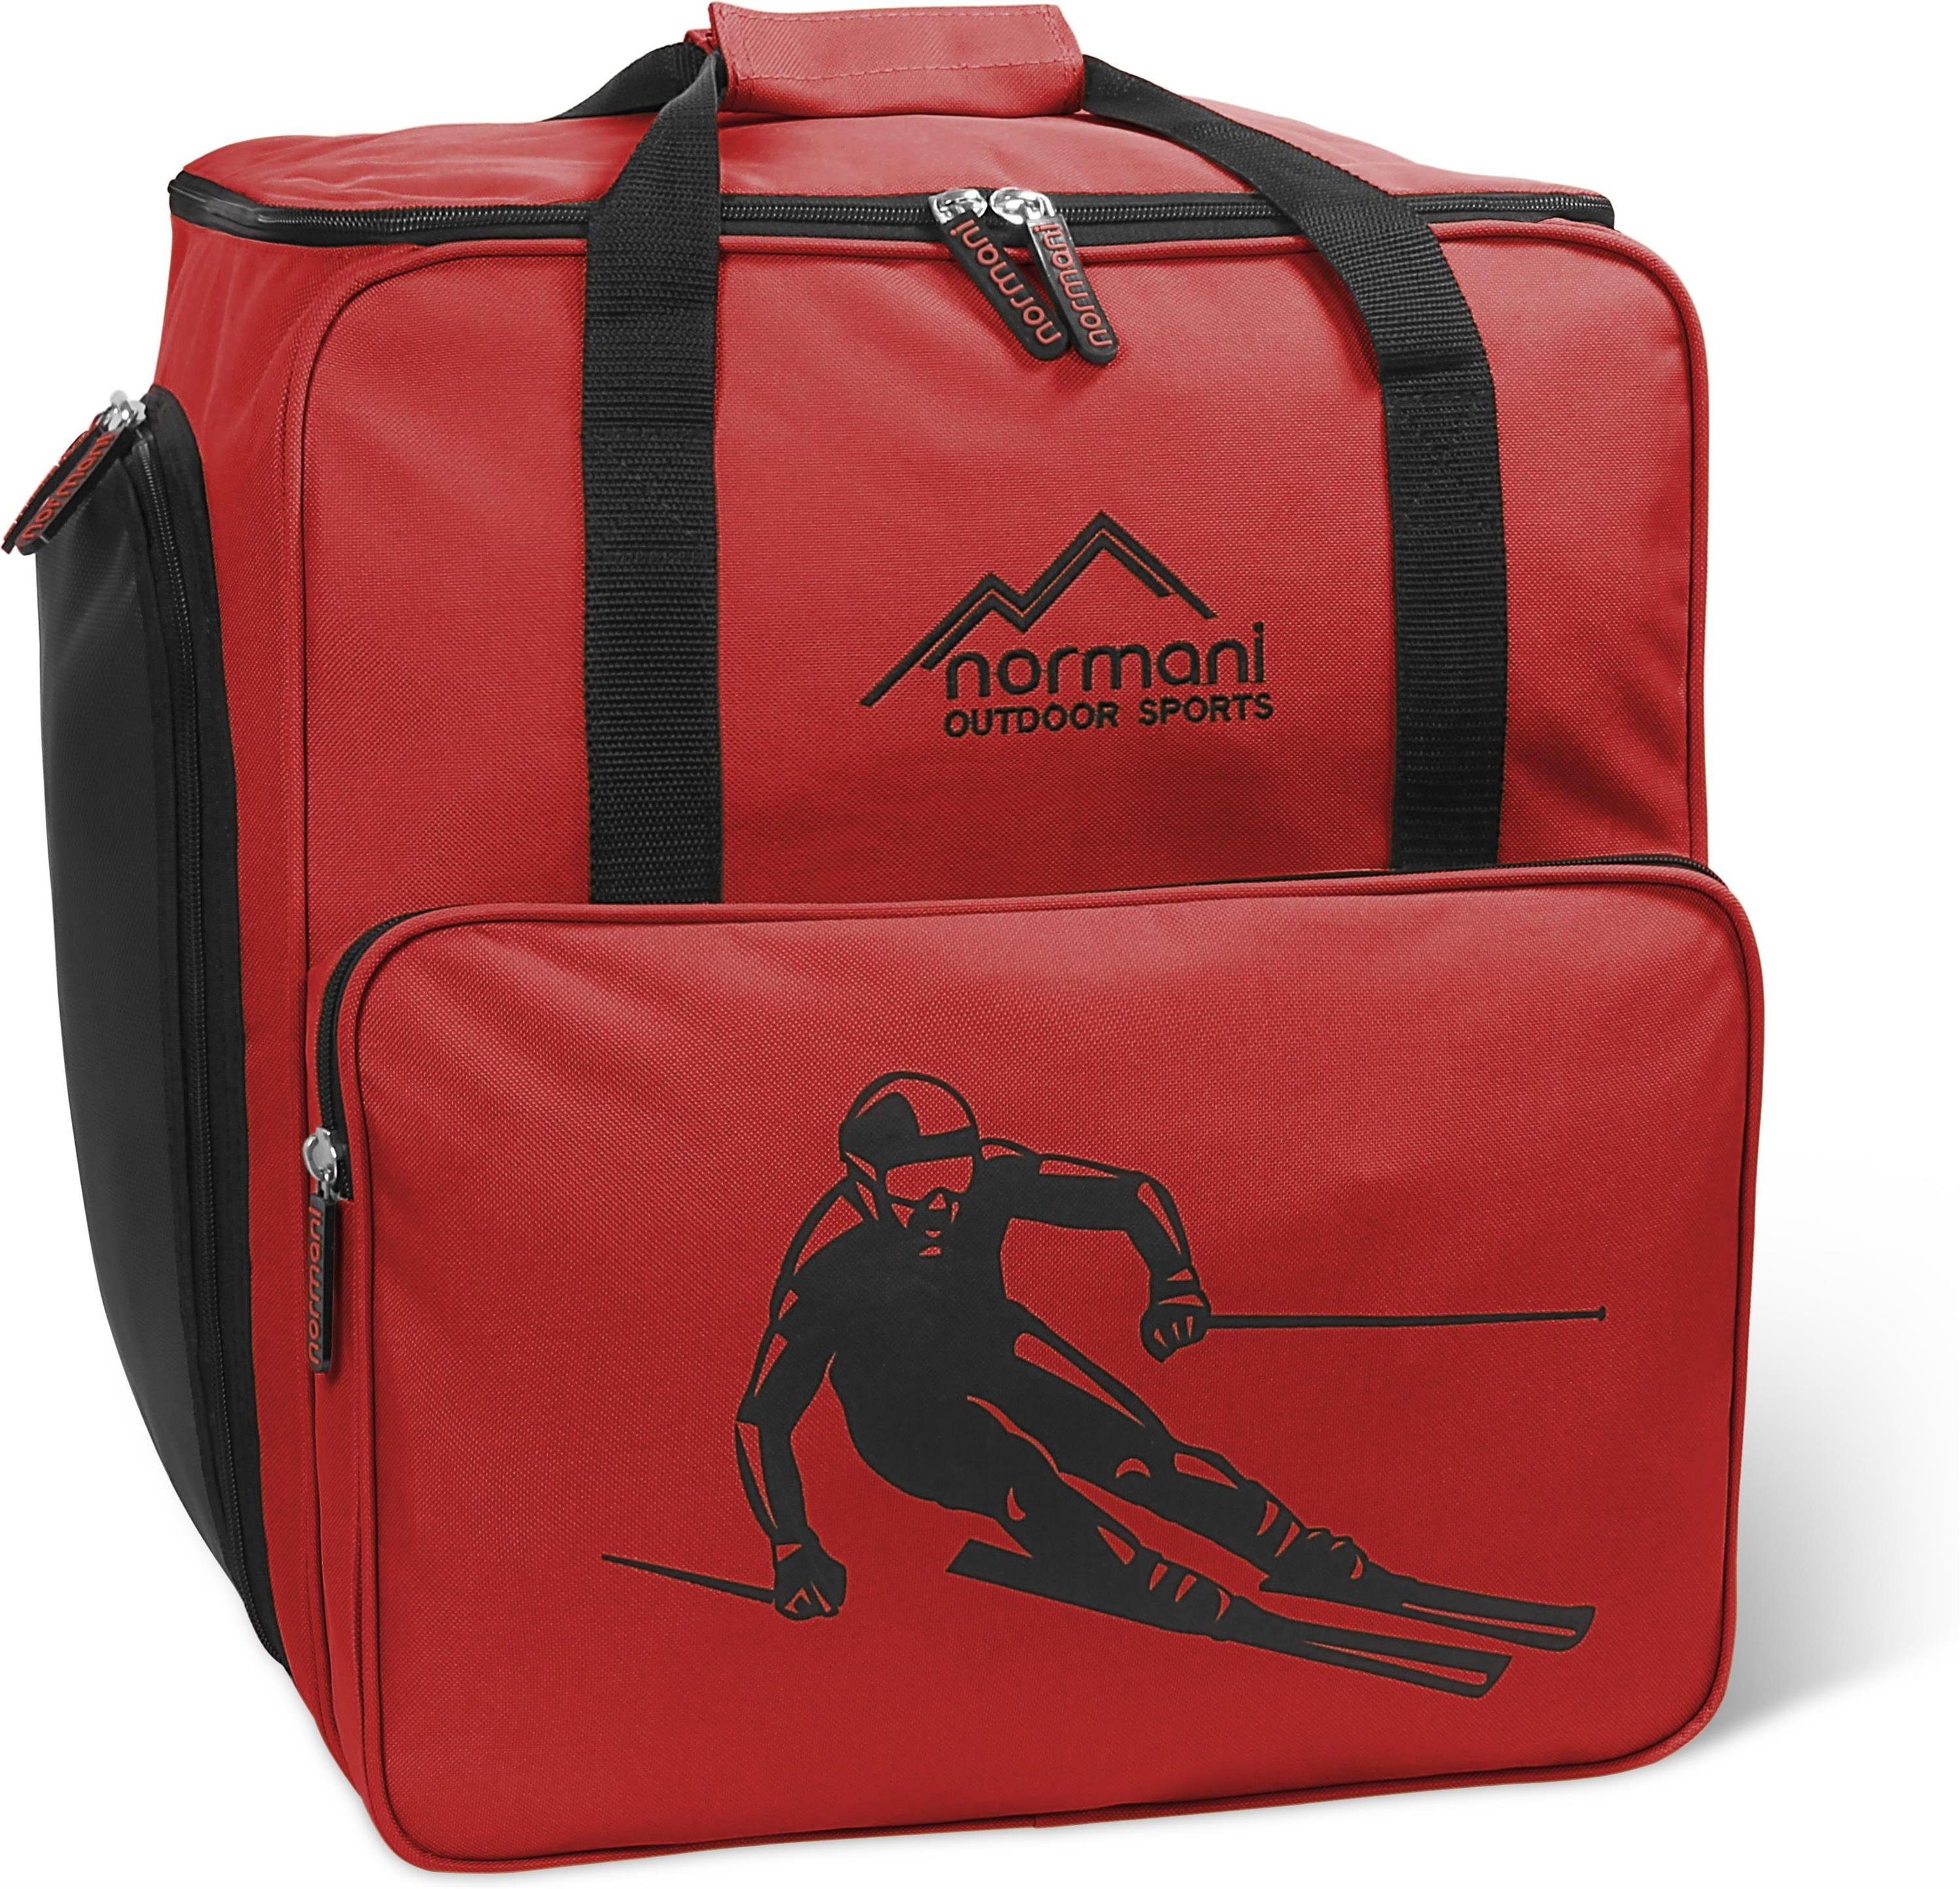 Snowboardschuhtasche Skitasche Bordeaux separatem l Sporttasche mit normani Rucksackfunktion und Rollschuhtasche Depo, - Alpine Helmfach oder 53 Skischuhtasche